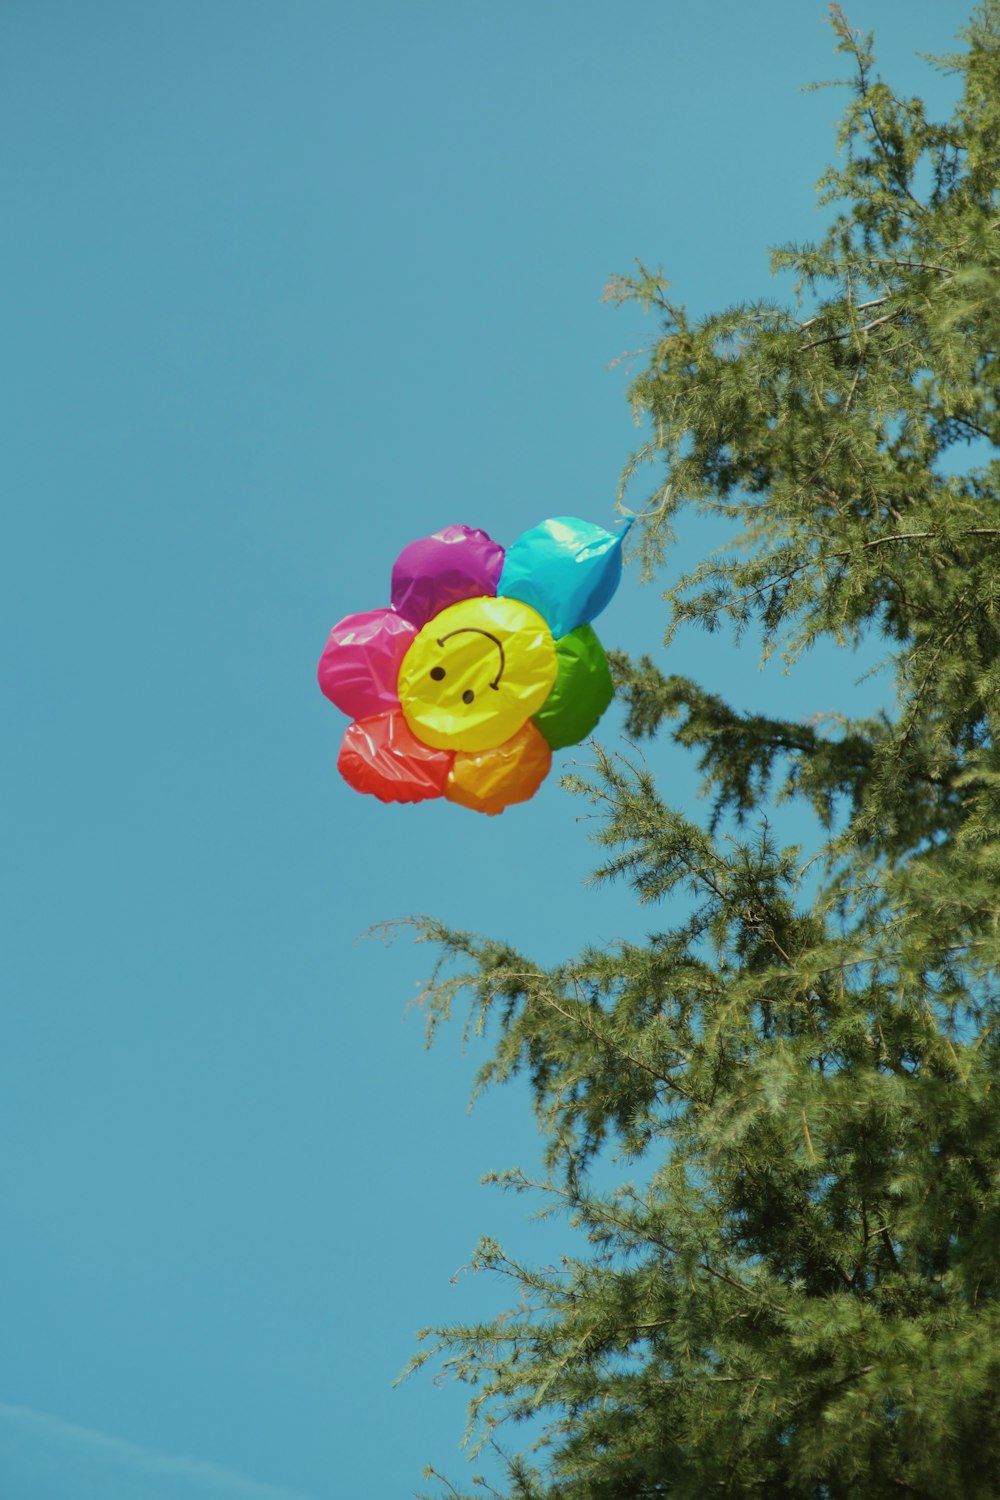 空中に浮かぶ風船の束